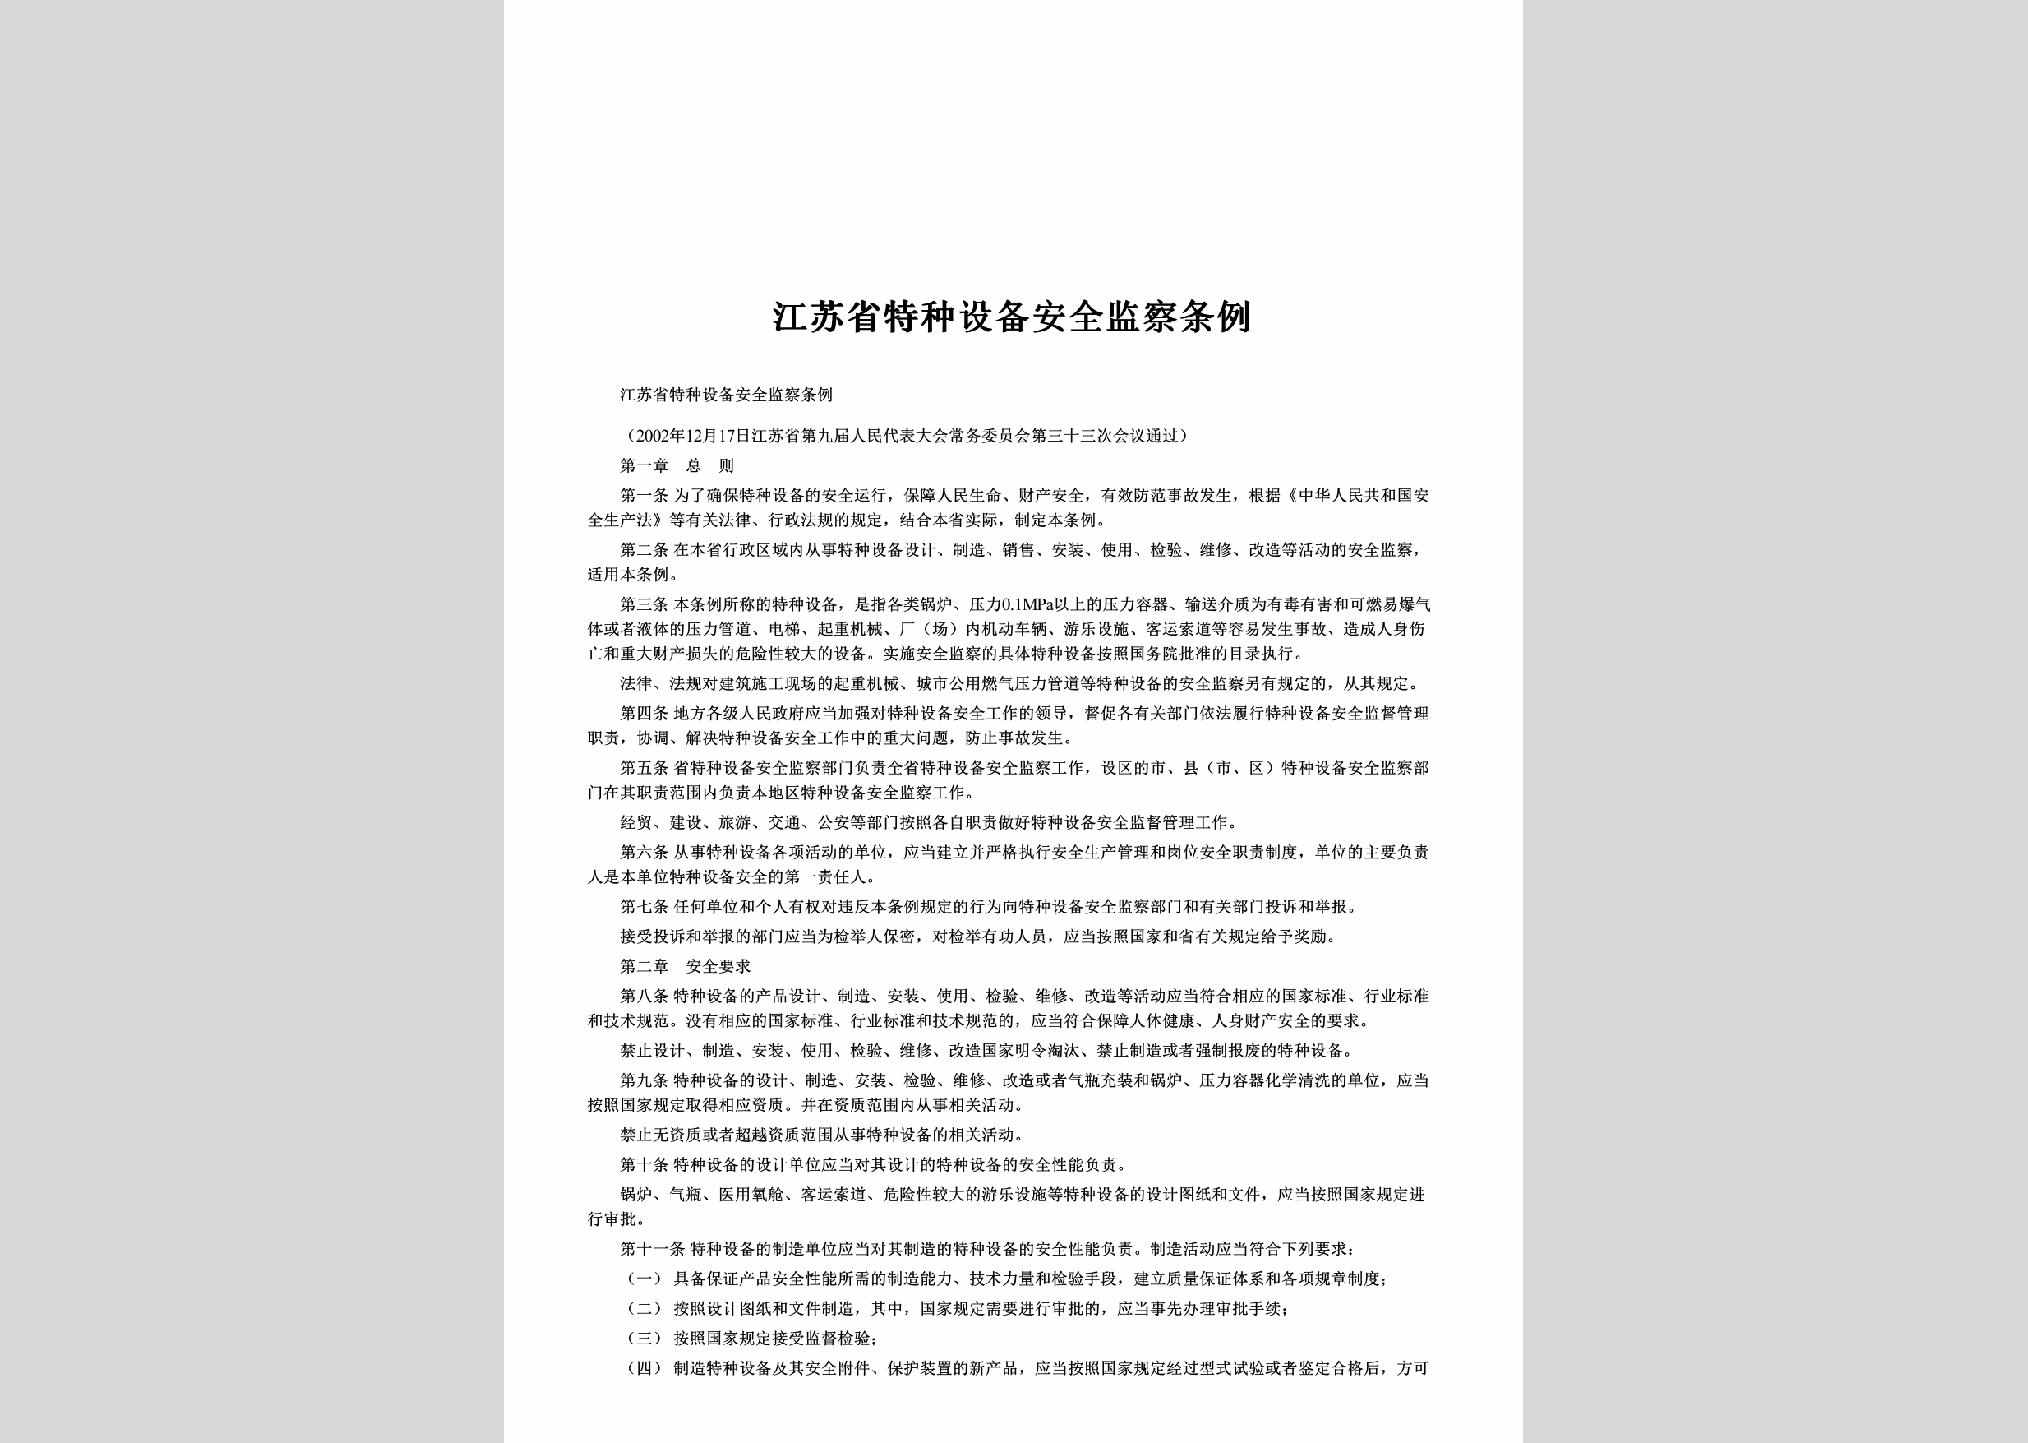 JS-TZSBJCTL-2003：江苏省特种设备安全监察条例